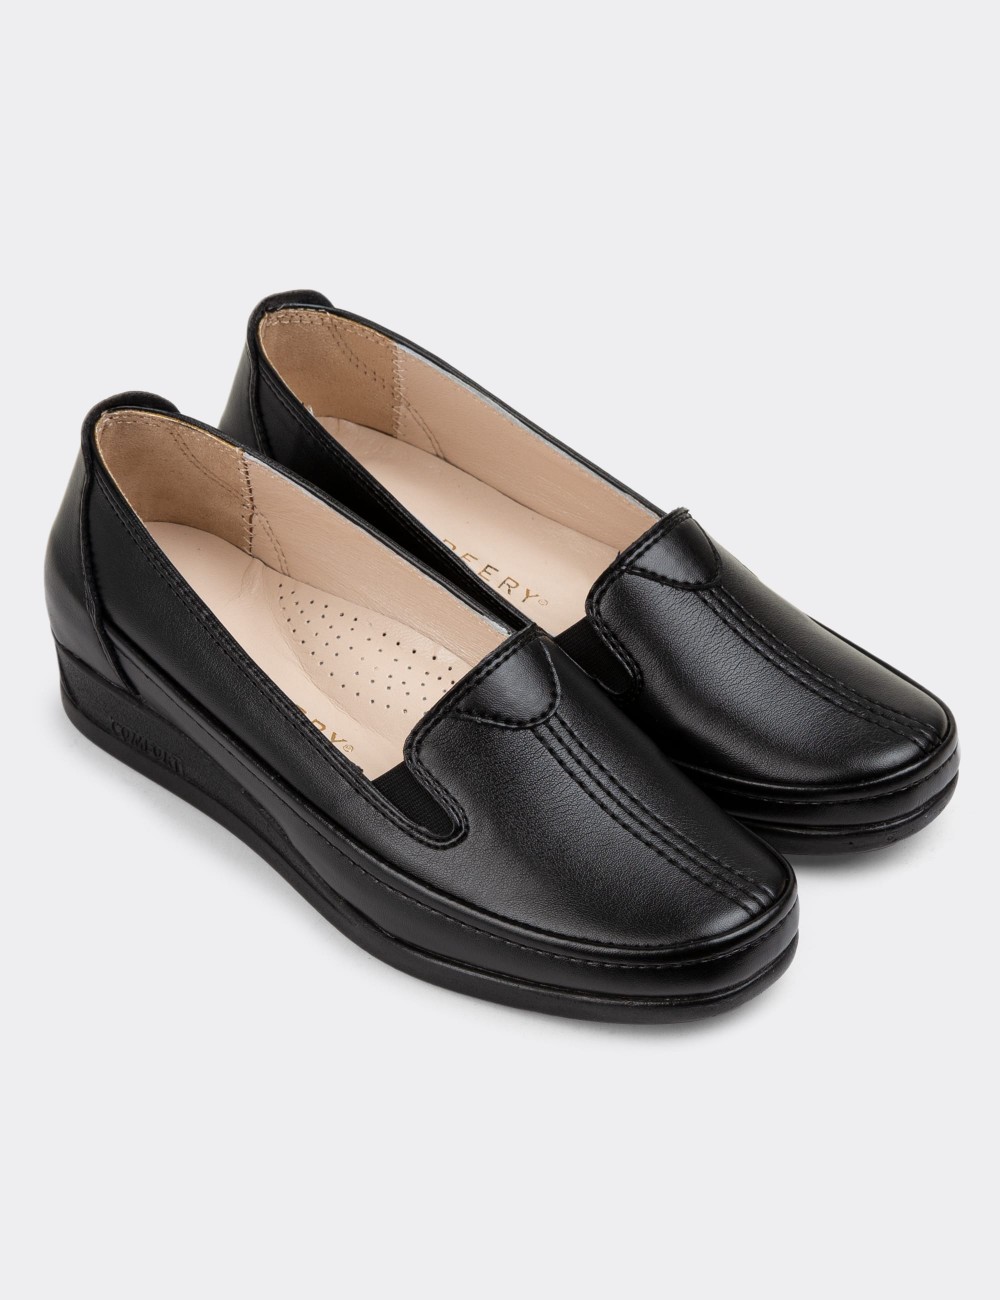 Black Loafers Shoes - K0145ZSYHC01